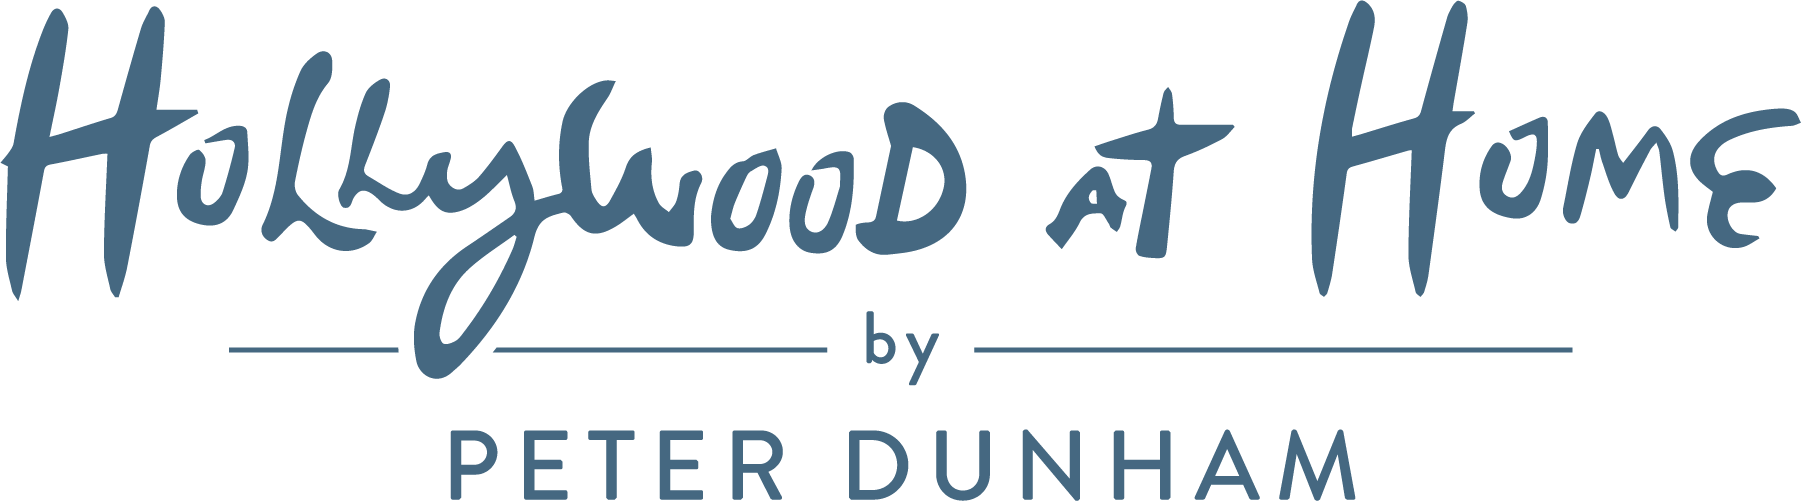 Hollywood at Home logo